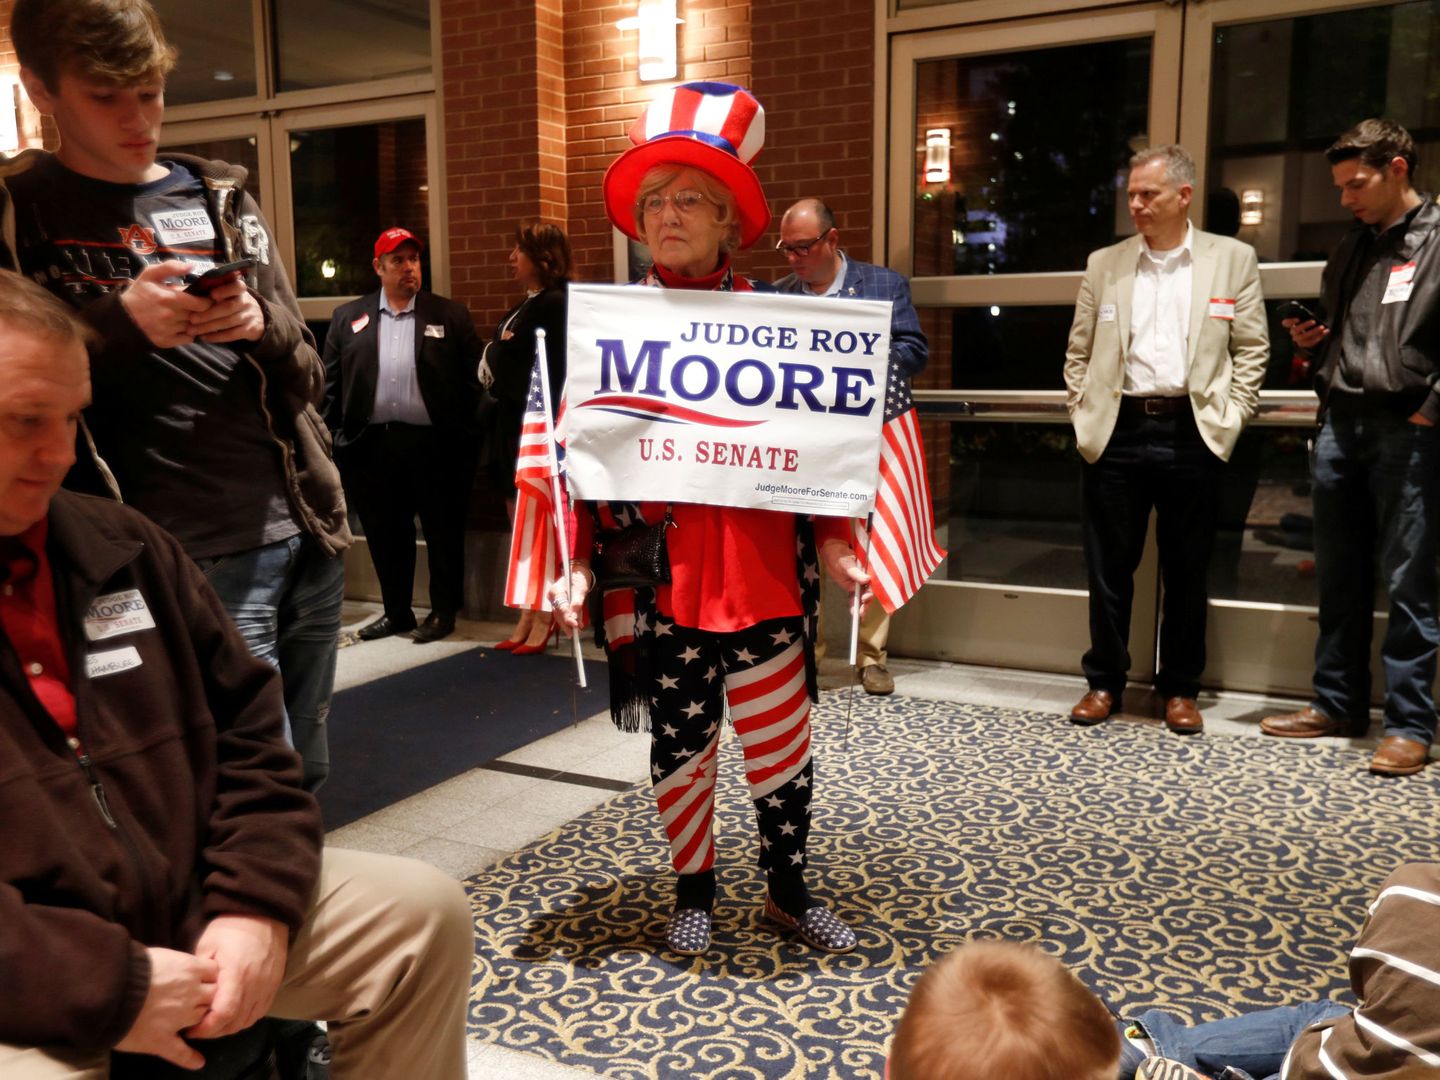 Partidarios del juez Roy Moore esperan los resultados de la elección en Montgomery, Alabama, el 12 de diciembre de 2017. (Reuters)